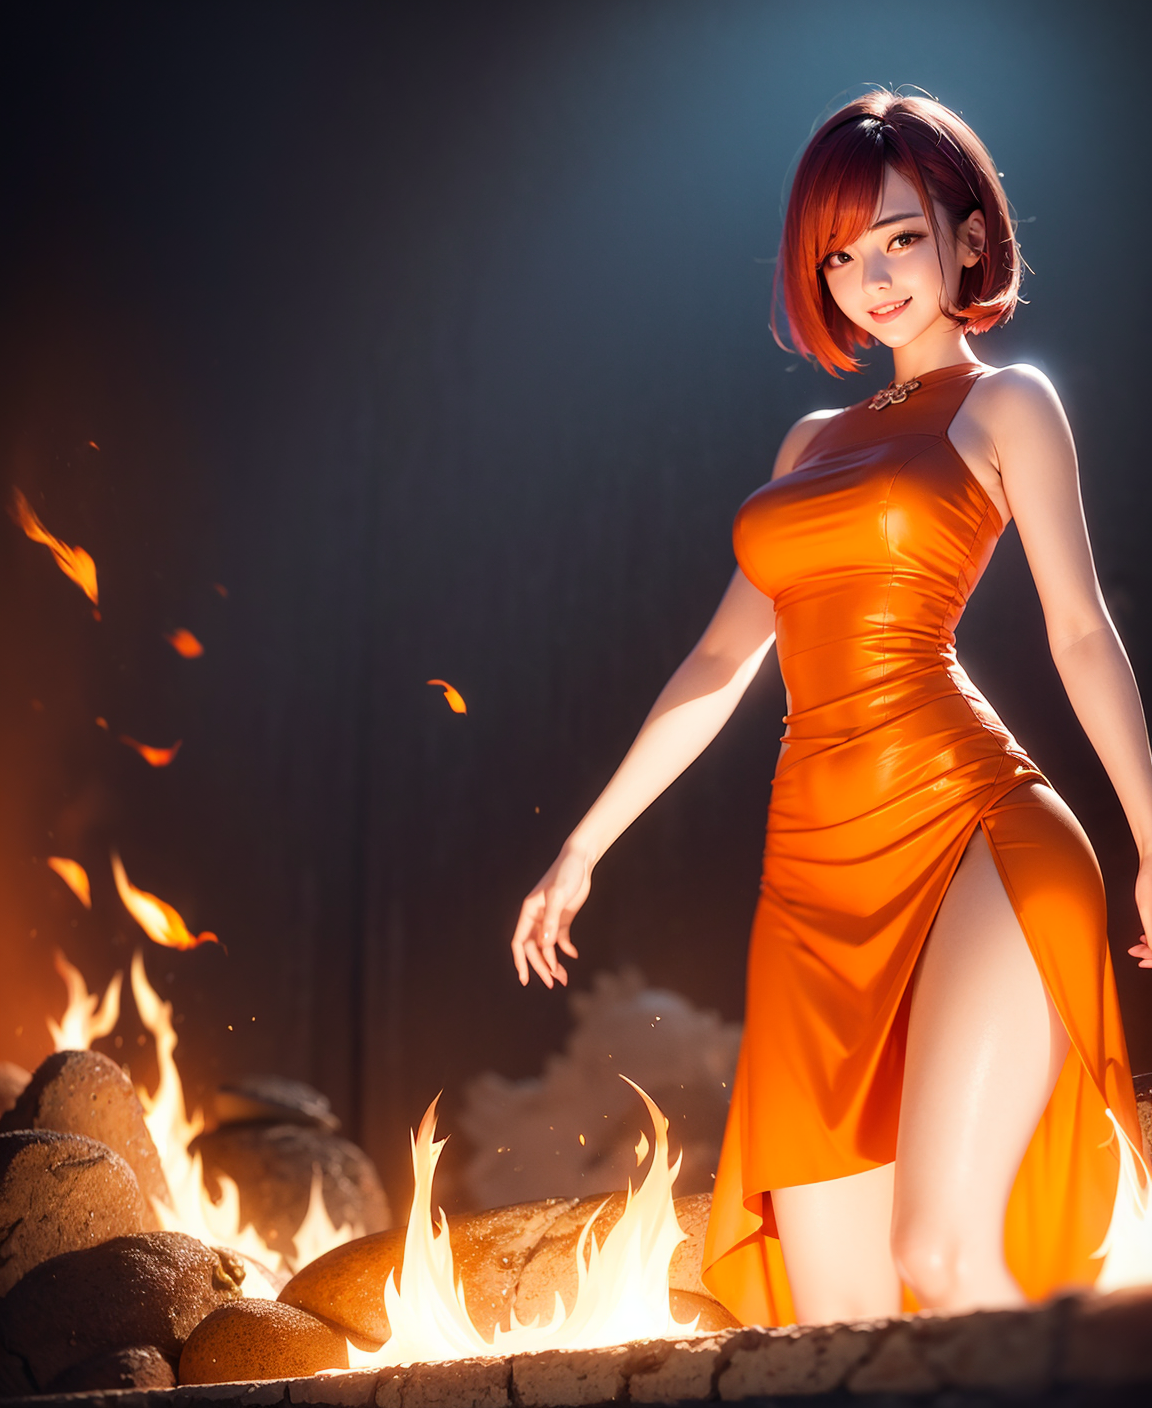 Ai Art Tight Dress Fire Vertical Asian Women Dress Looking At Viewer Redhead 1152x1408